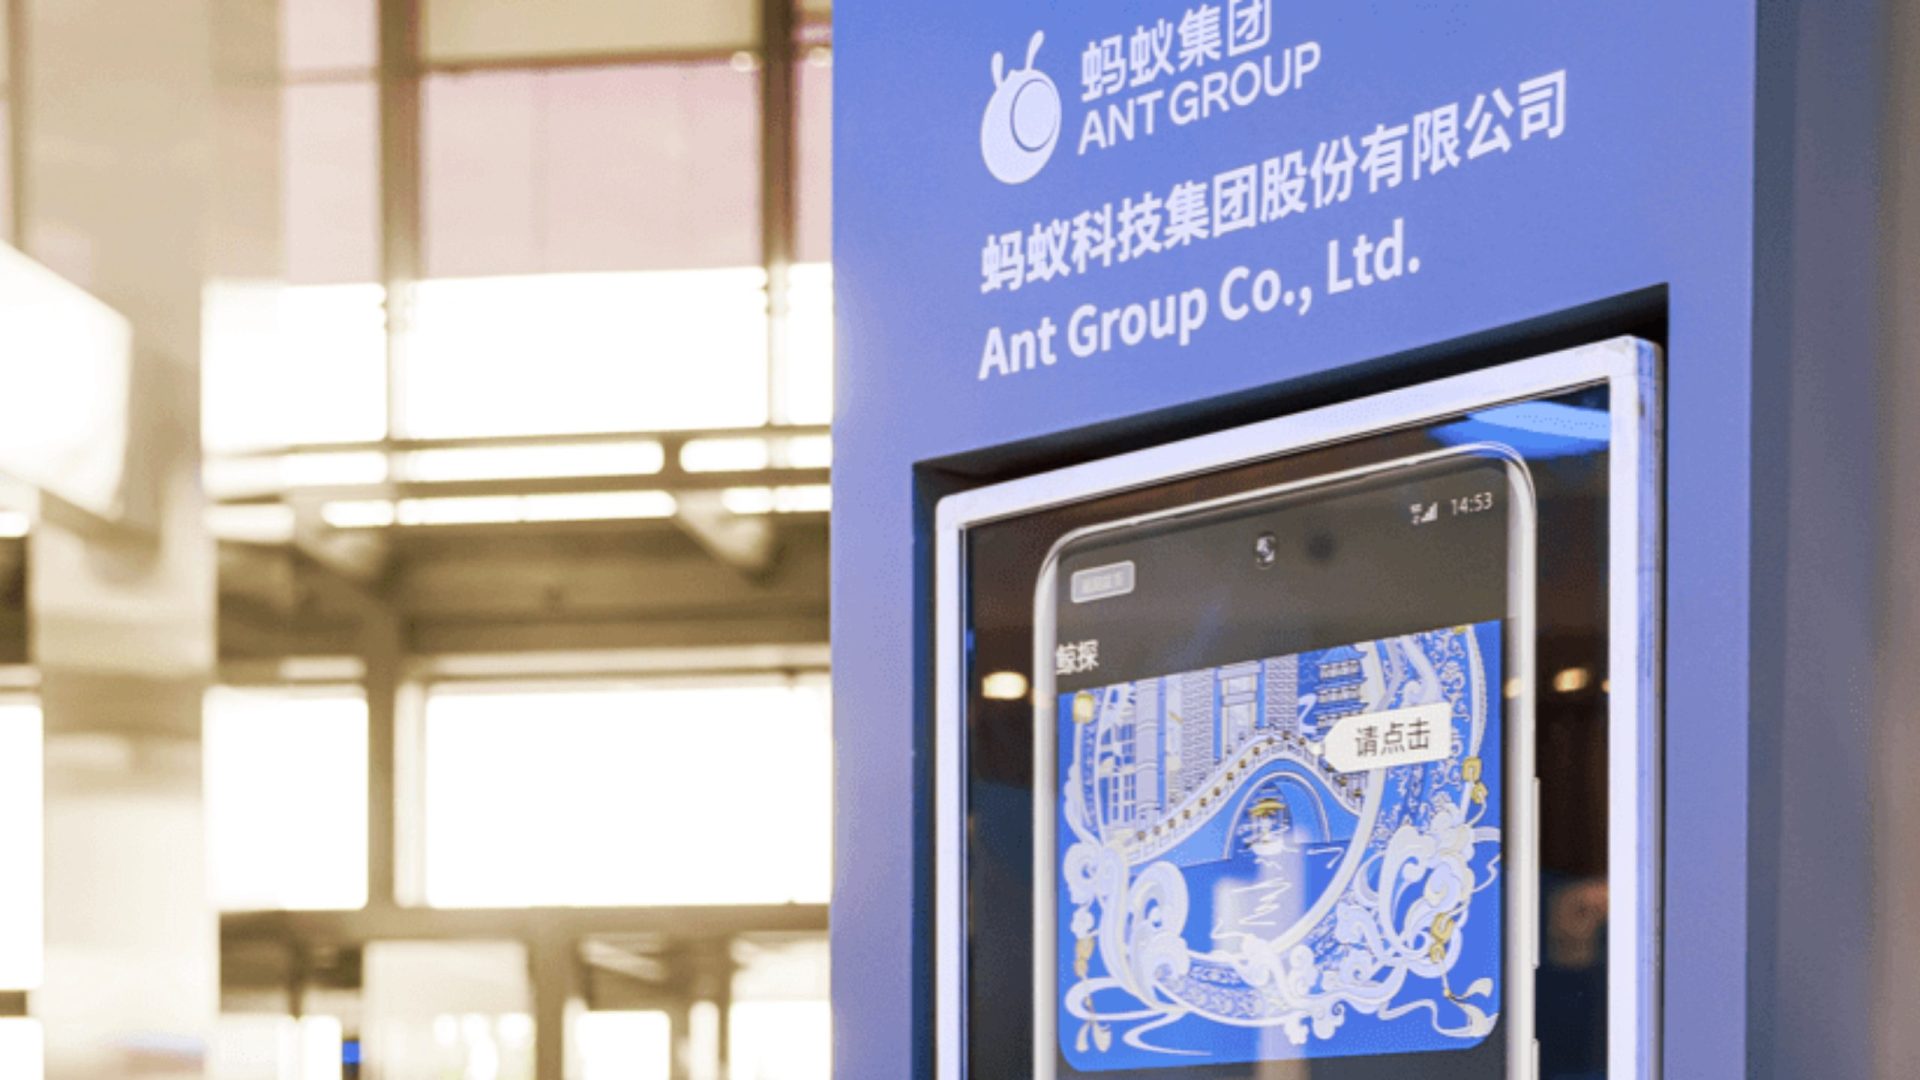 A empresa Ant Group opera o 'Alipay', maior plataforma de pagamento online do mundo - Foto: Reprodução/ Site Ant Group